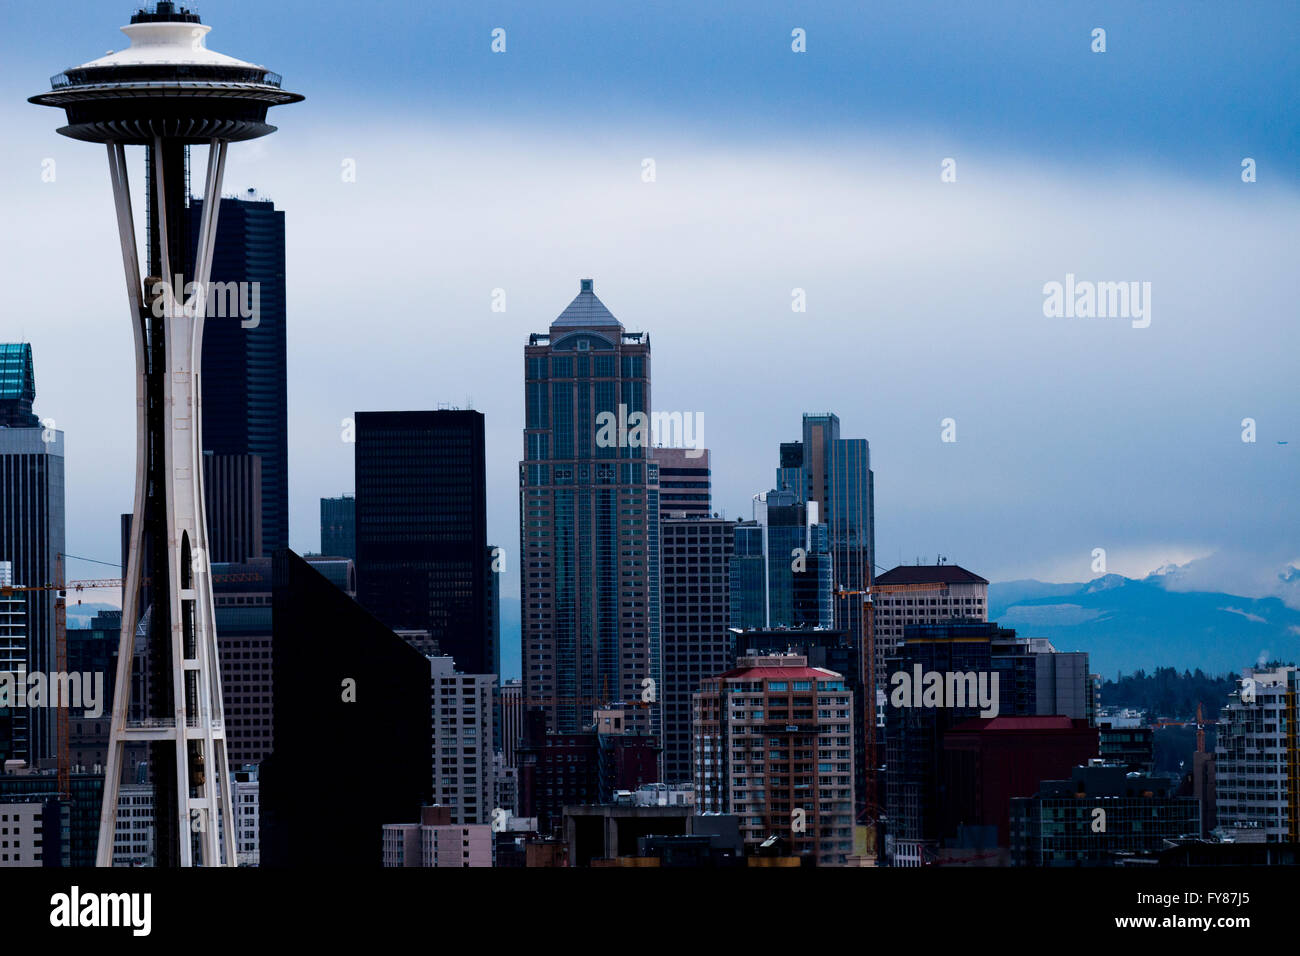 Space Needle Tower In Seattle Washington Vereinigte Staaten von Amerika Skyline mit Wolkenkratzern City Scape Gebäude-Architektur Stockfoto